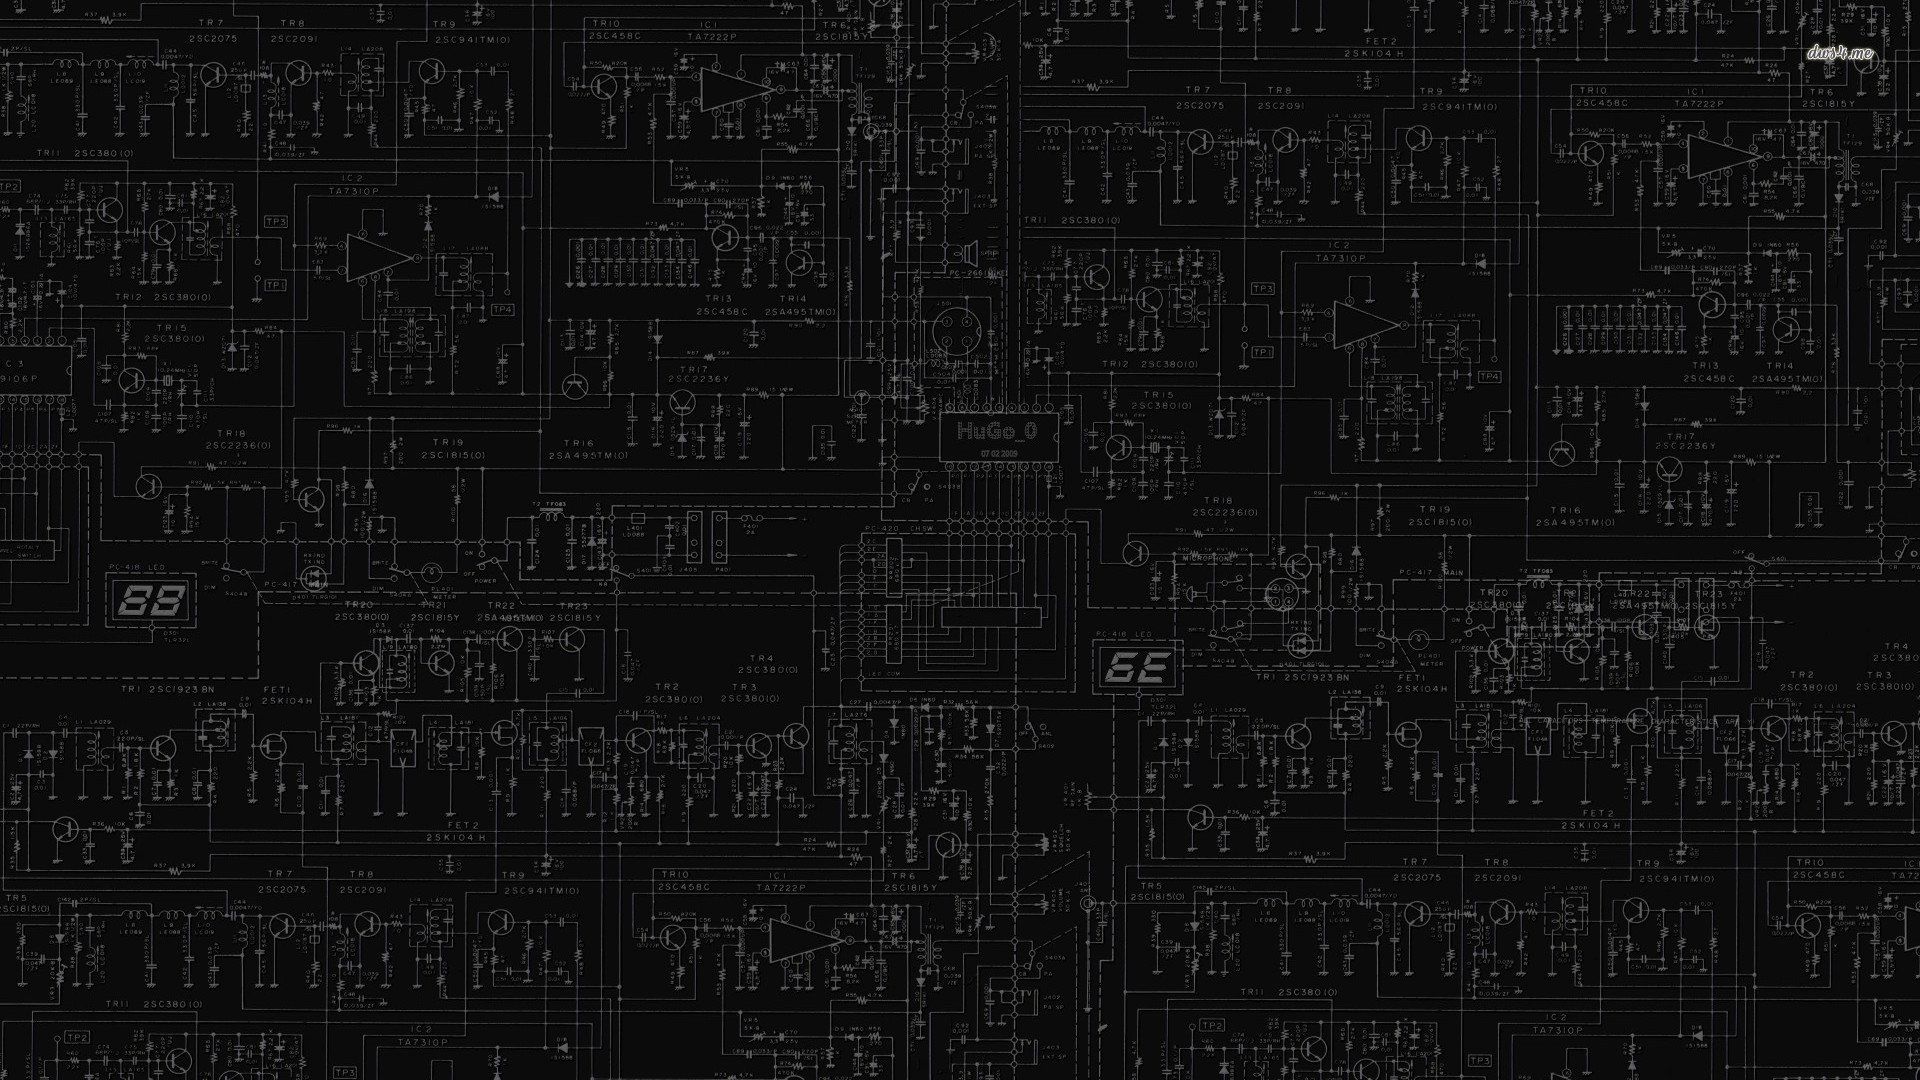 Dark Electronic Wallpaper Free Dark Electronic Background